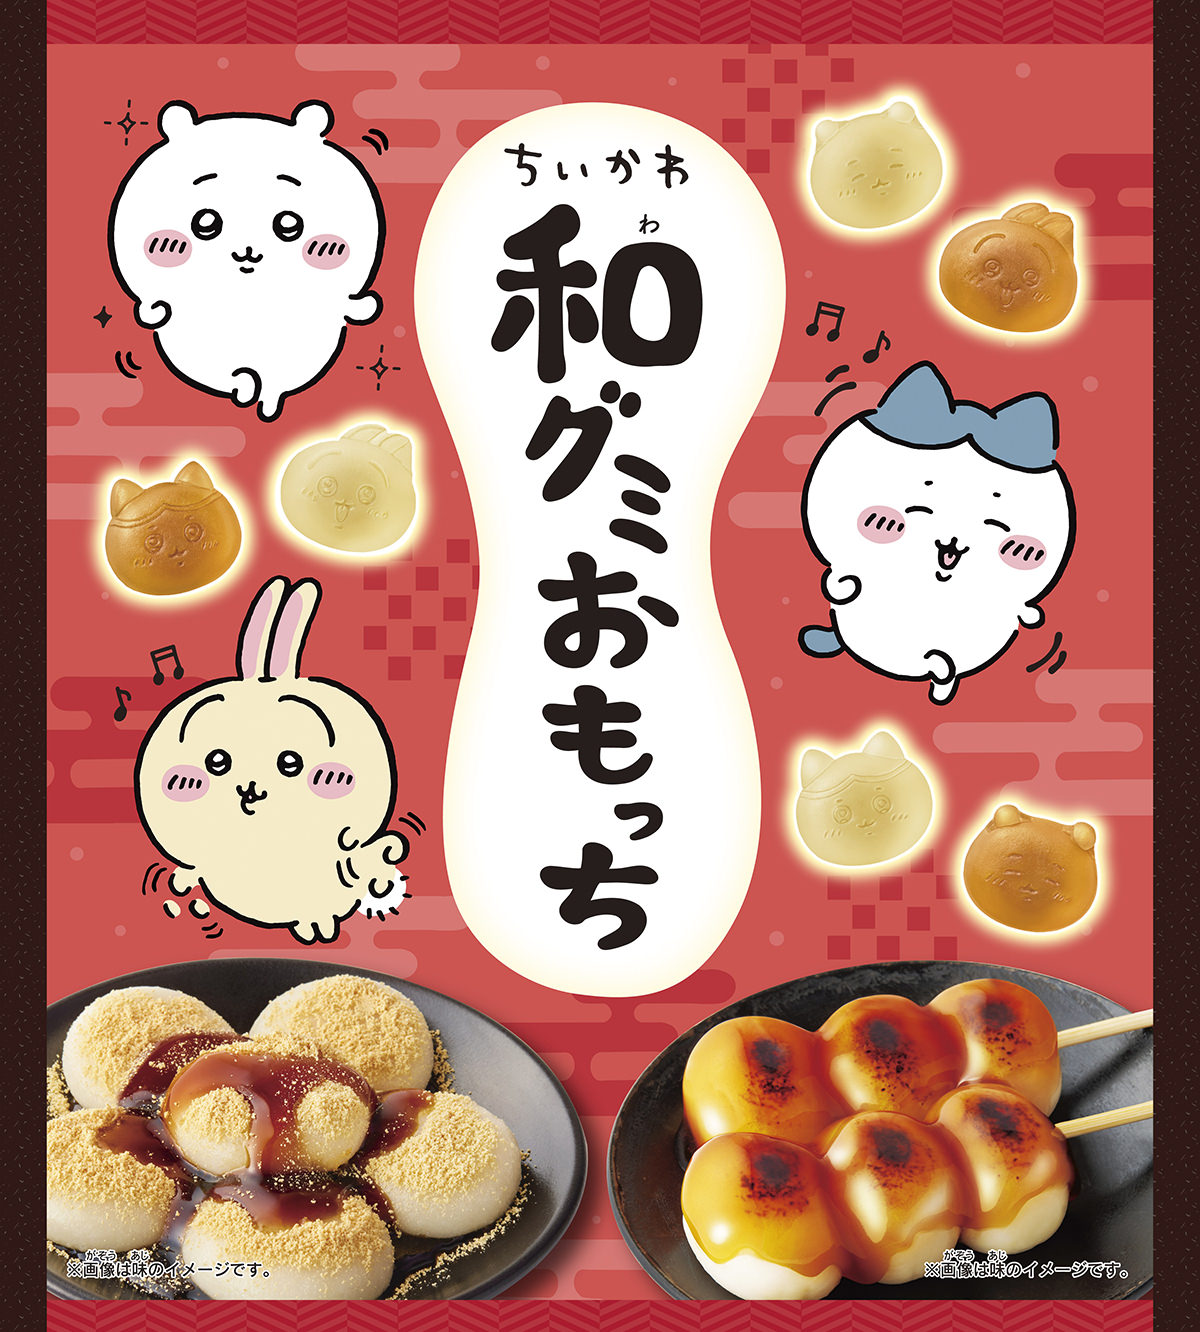 ちいかわ 和グミおもっち 9月25日より和菓子風の新食感グミ登場!